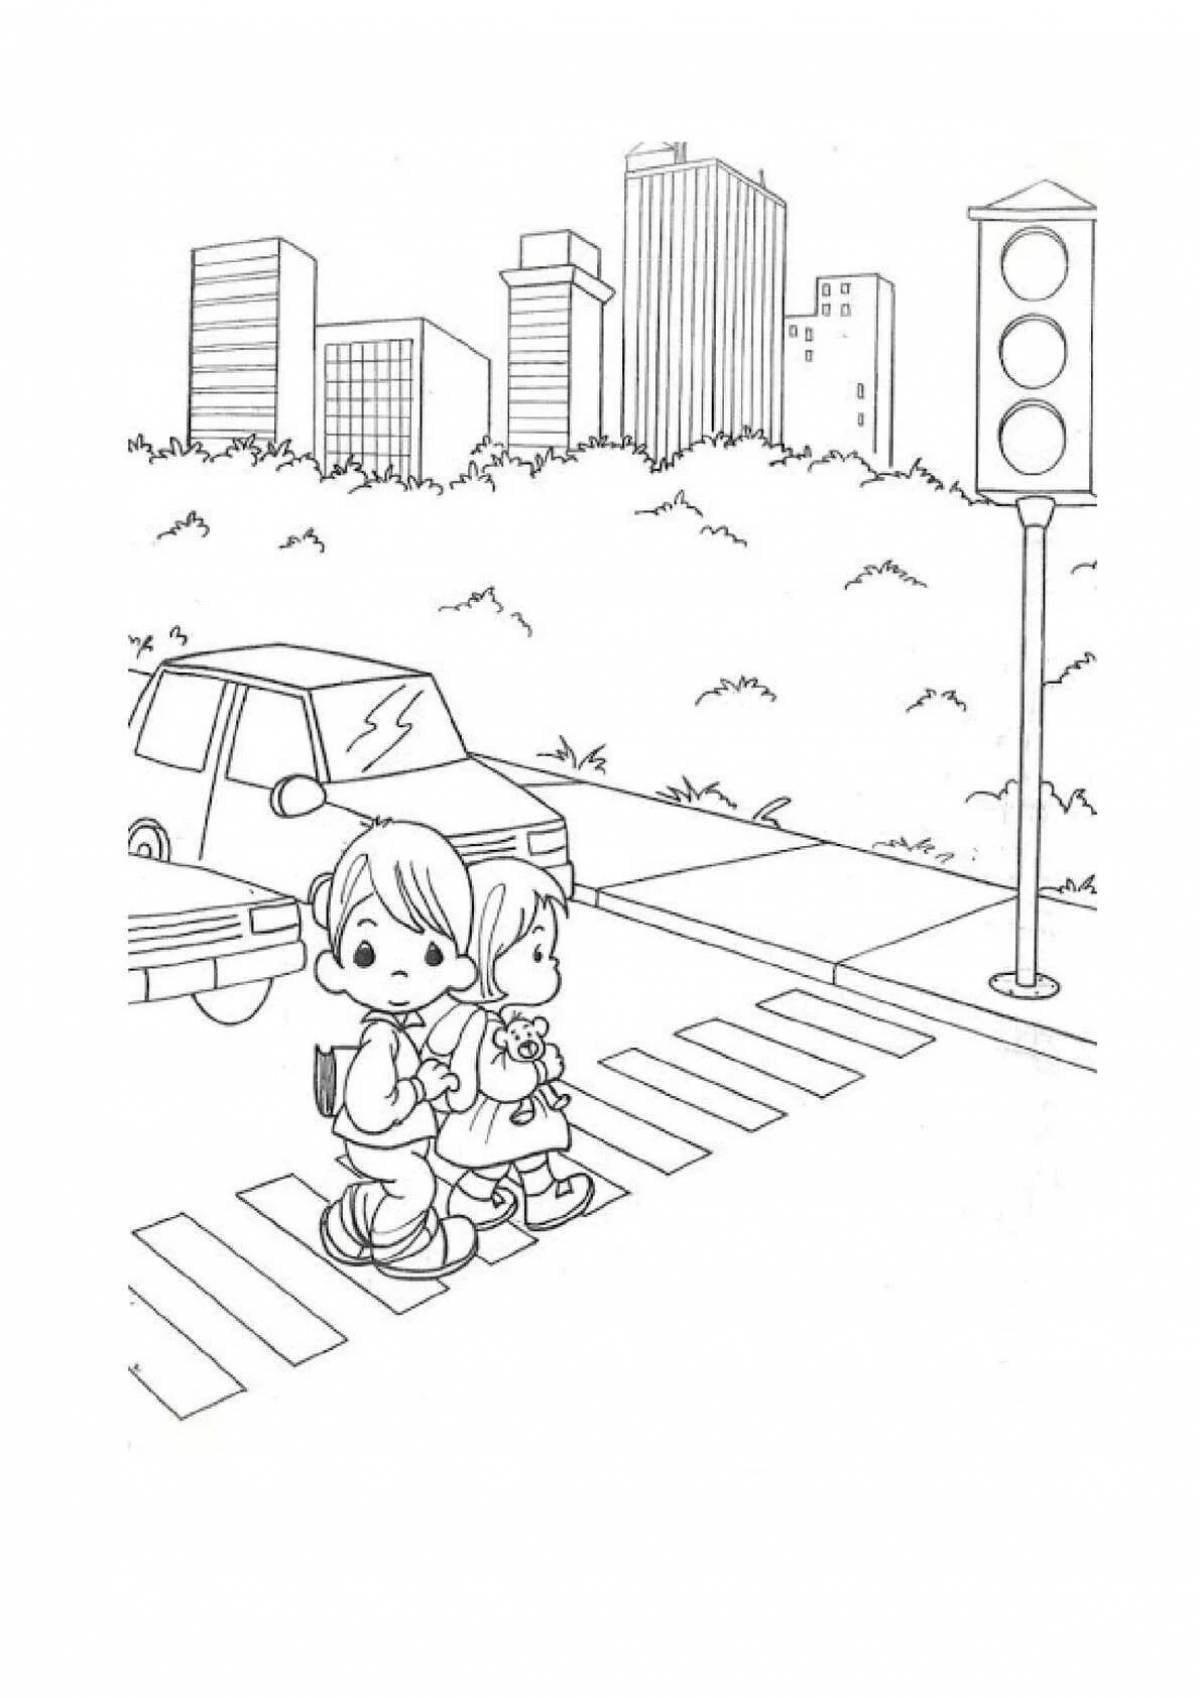 Child pedestrian #20